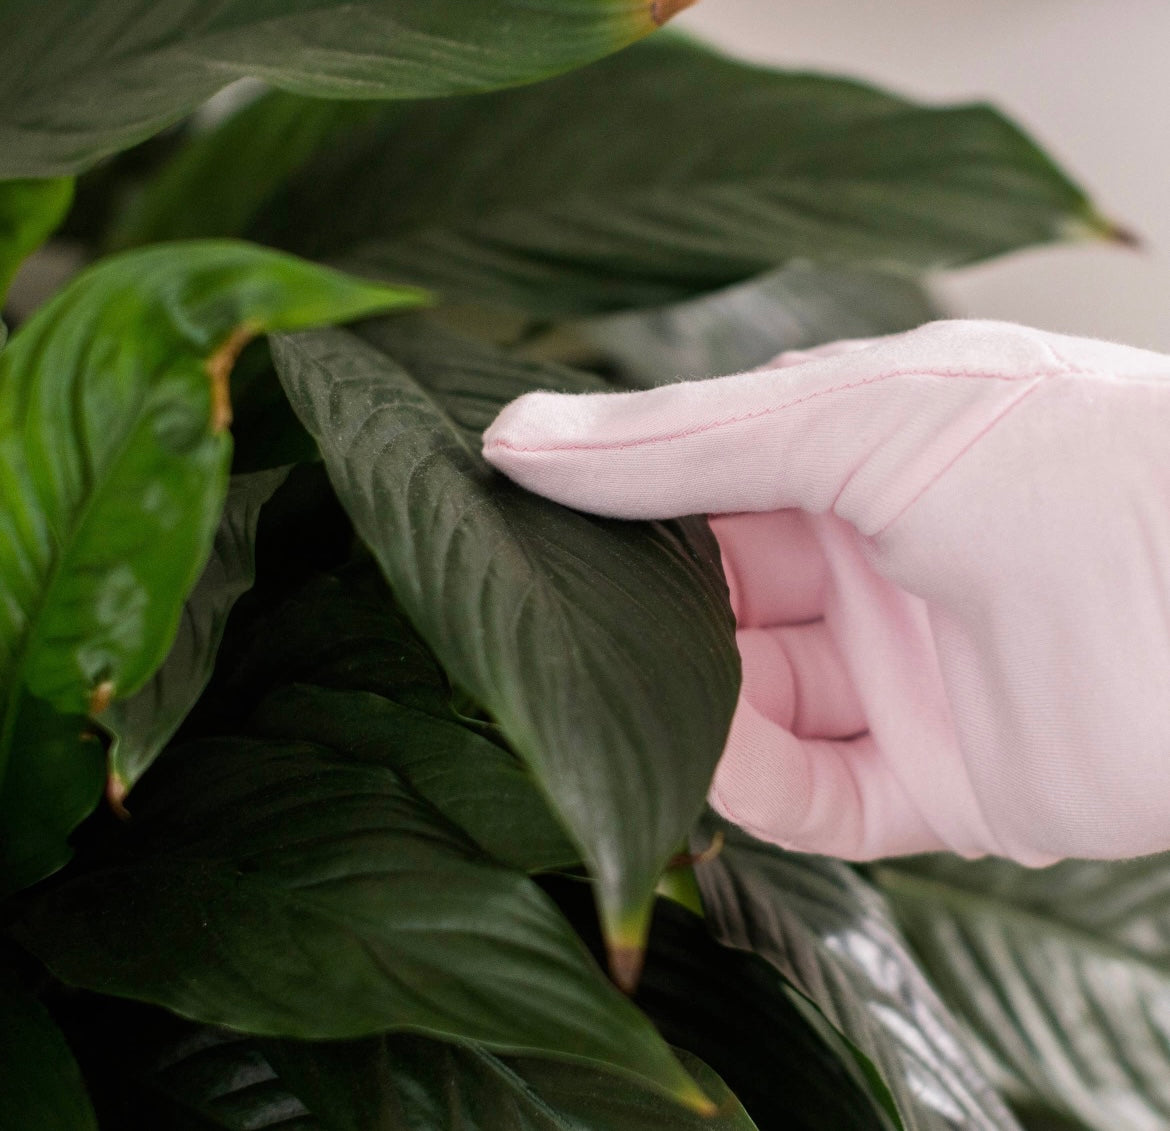 Houseplant Duster Gloves